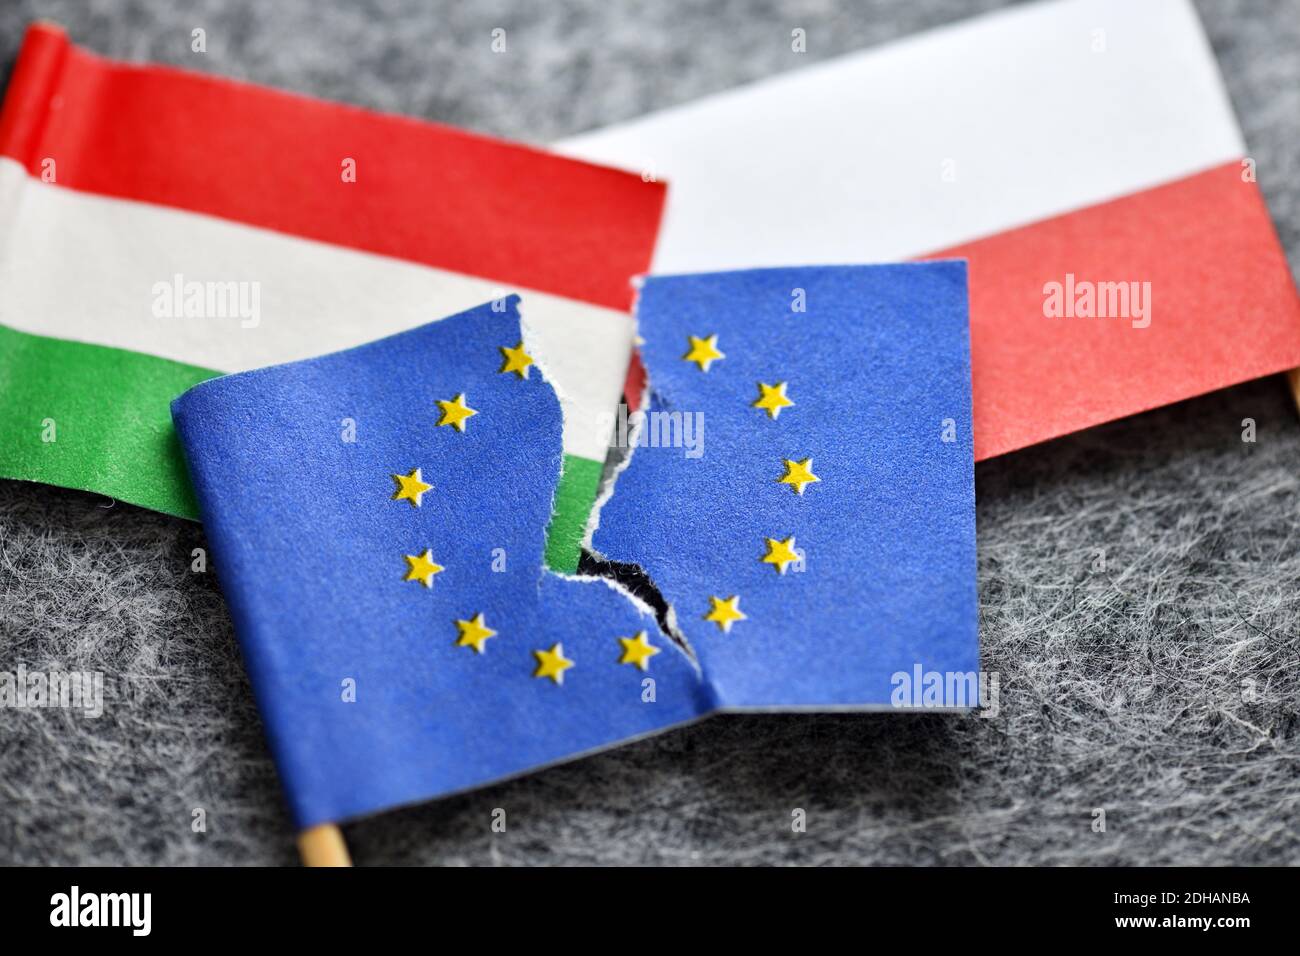 Angerissene EU-Fahne und Fahnen von Ungarn und Polen, EU-Haushaltsstreit Stock Photo